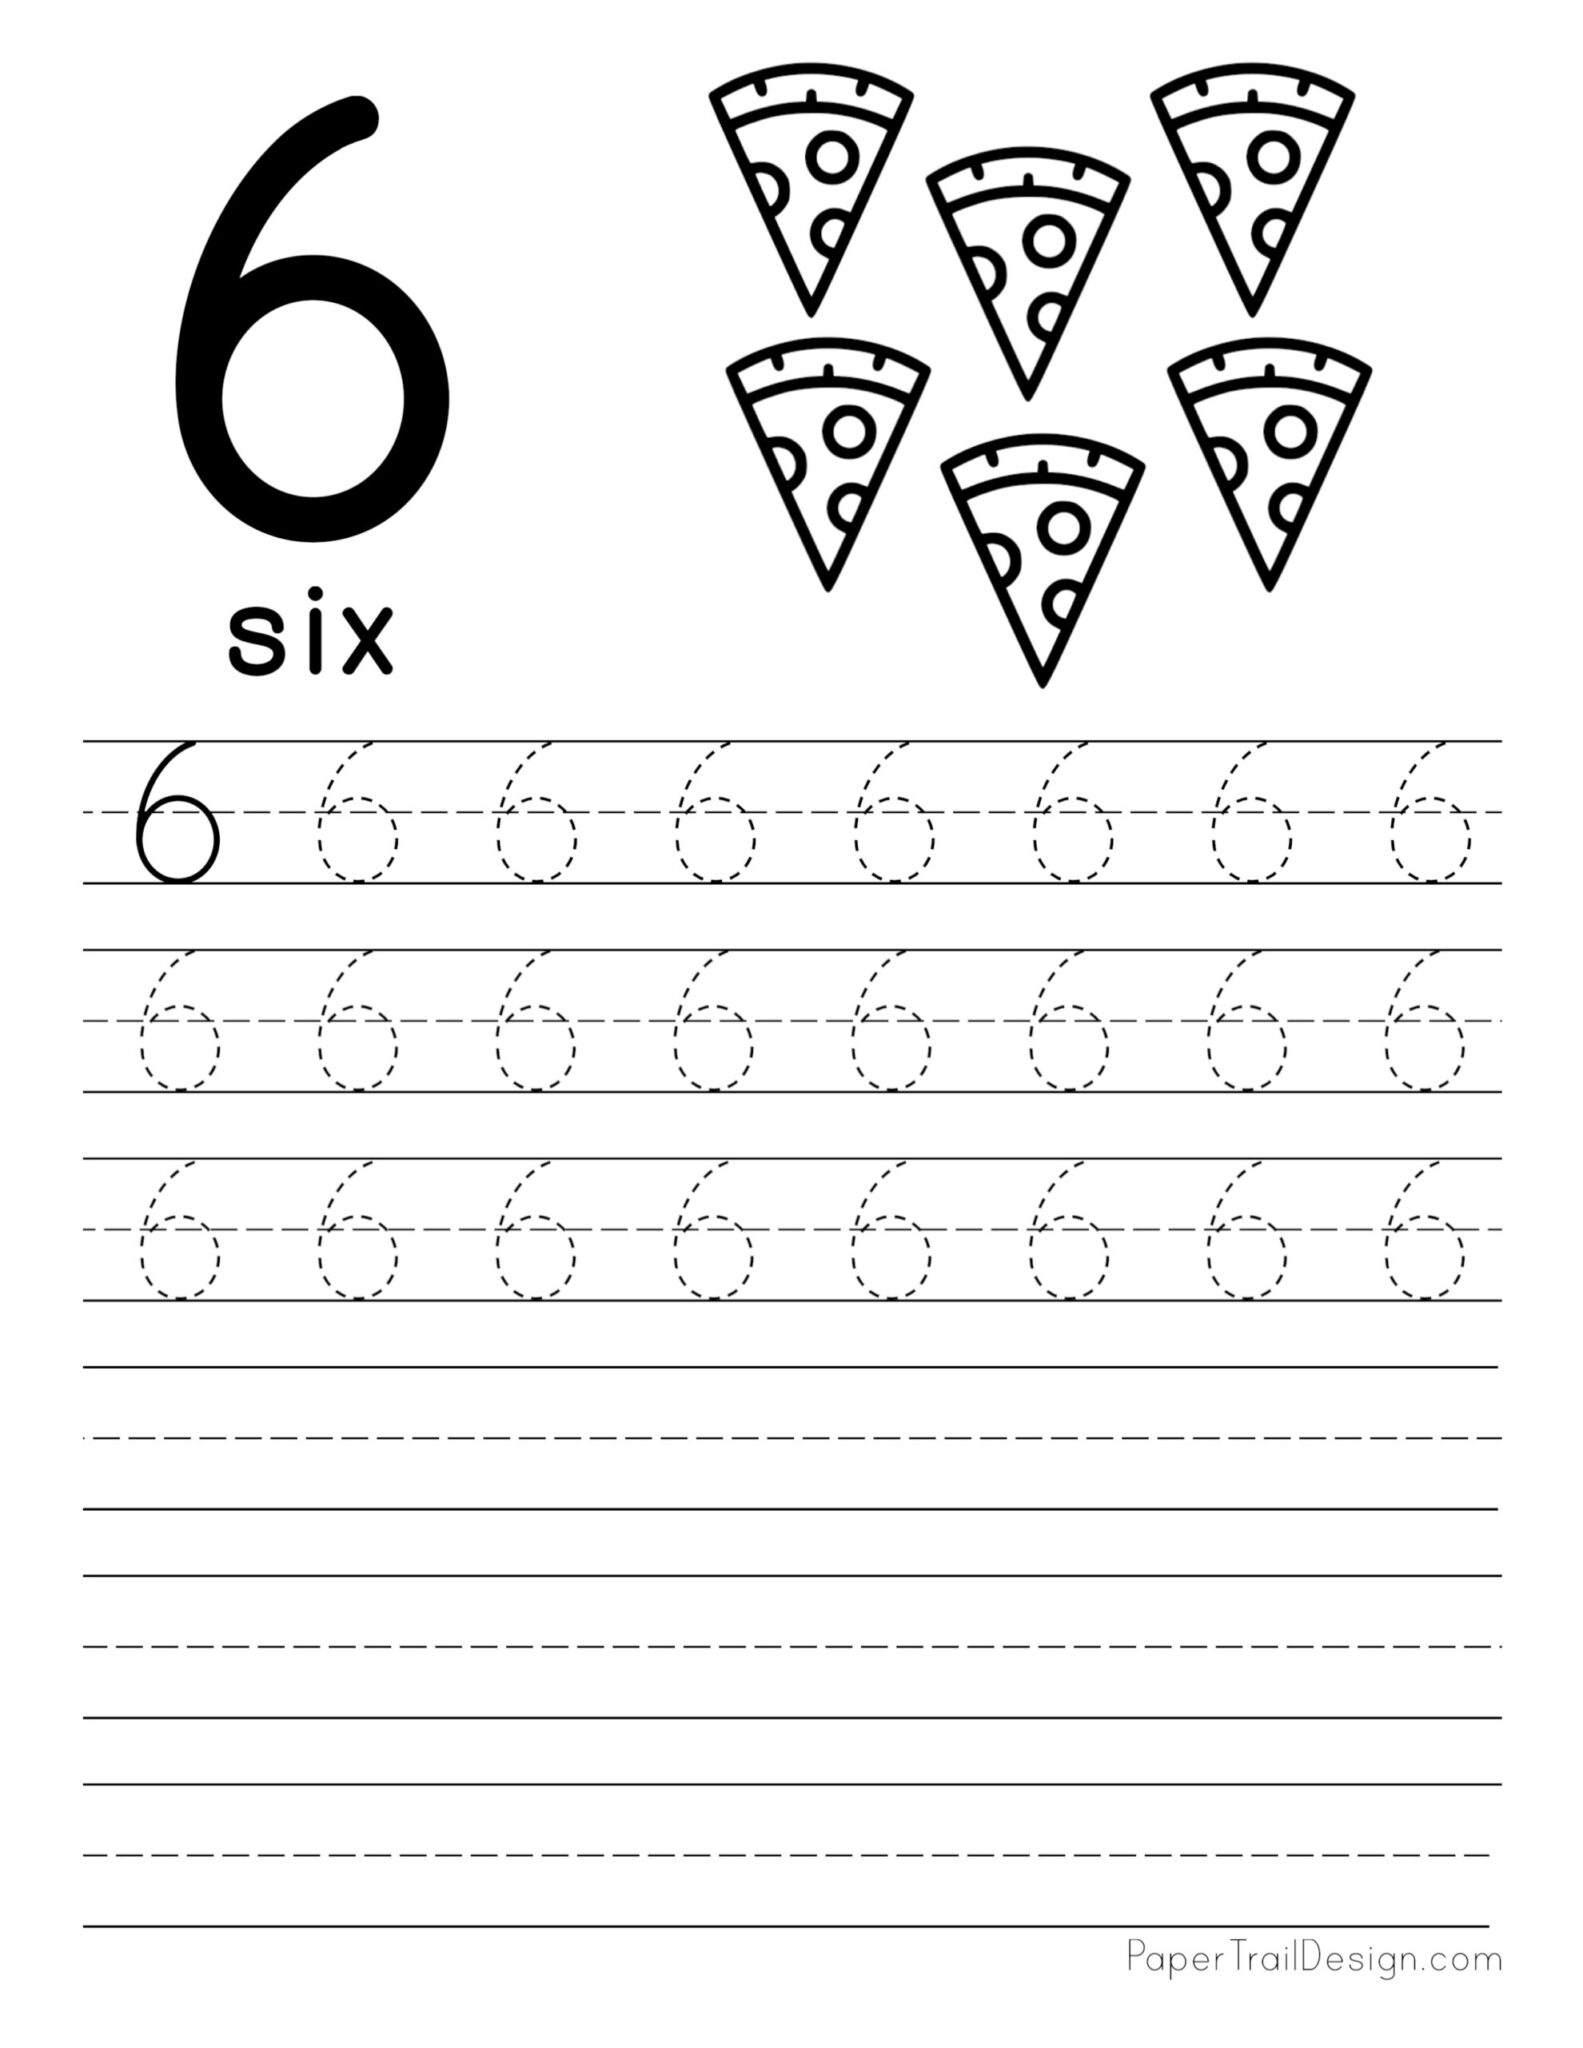 tracing-number-5-worksheet-kindergarten-free-printable-pdf